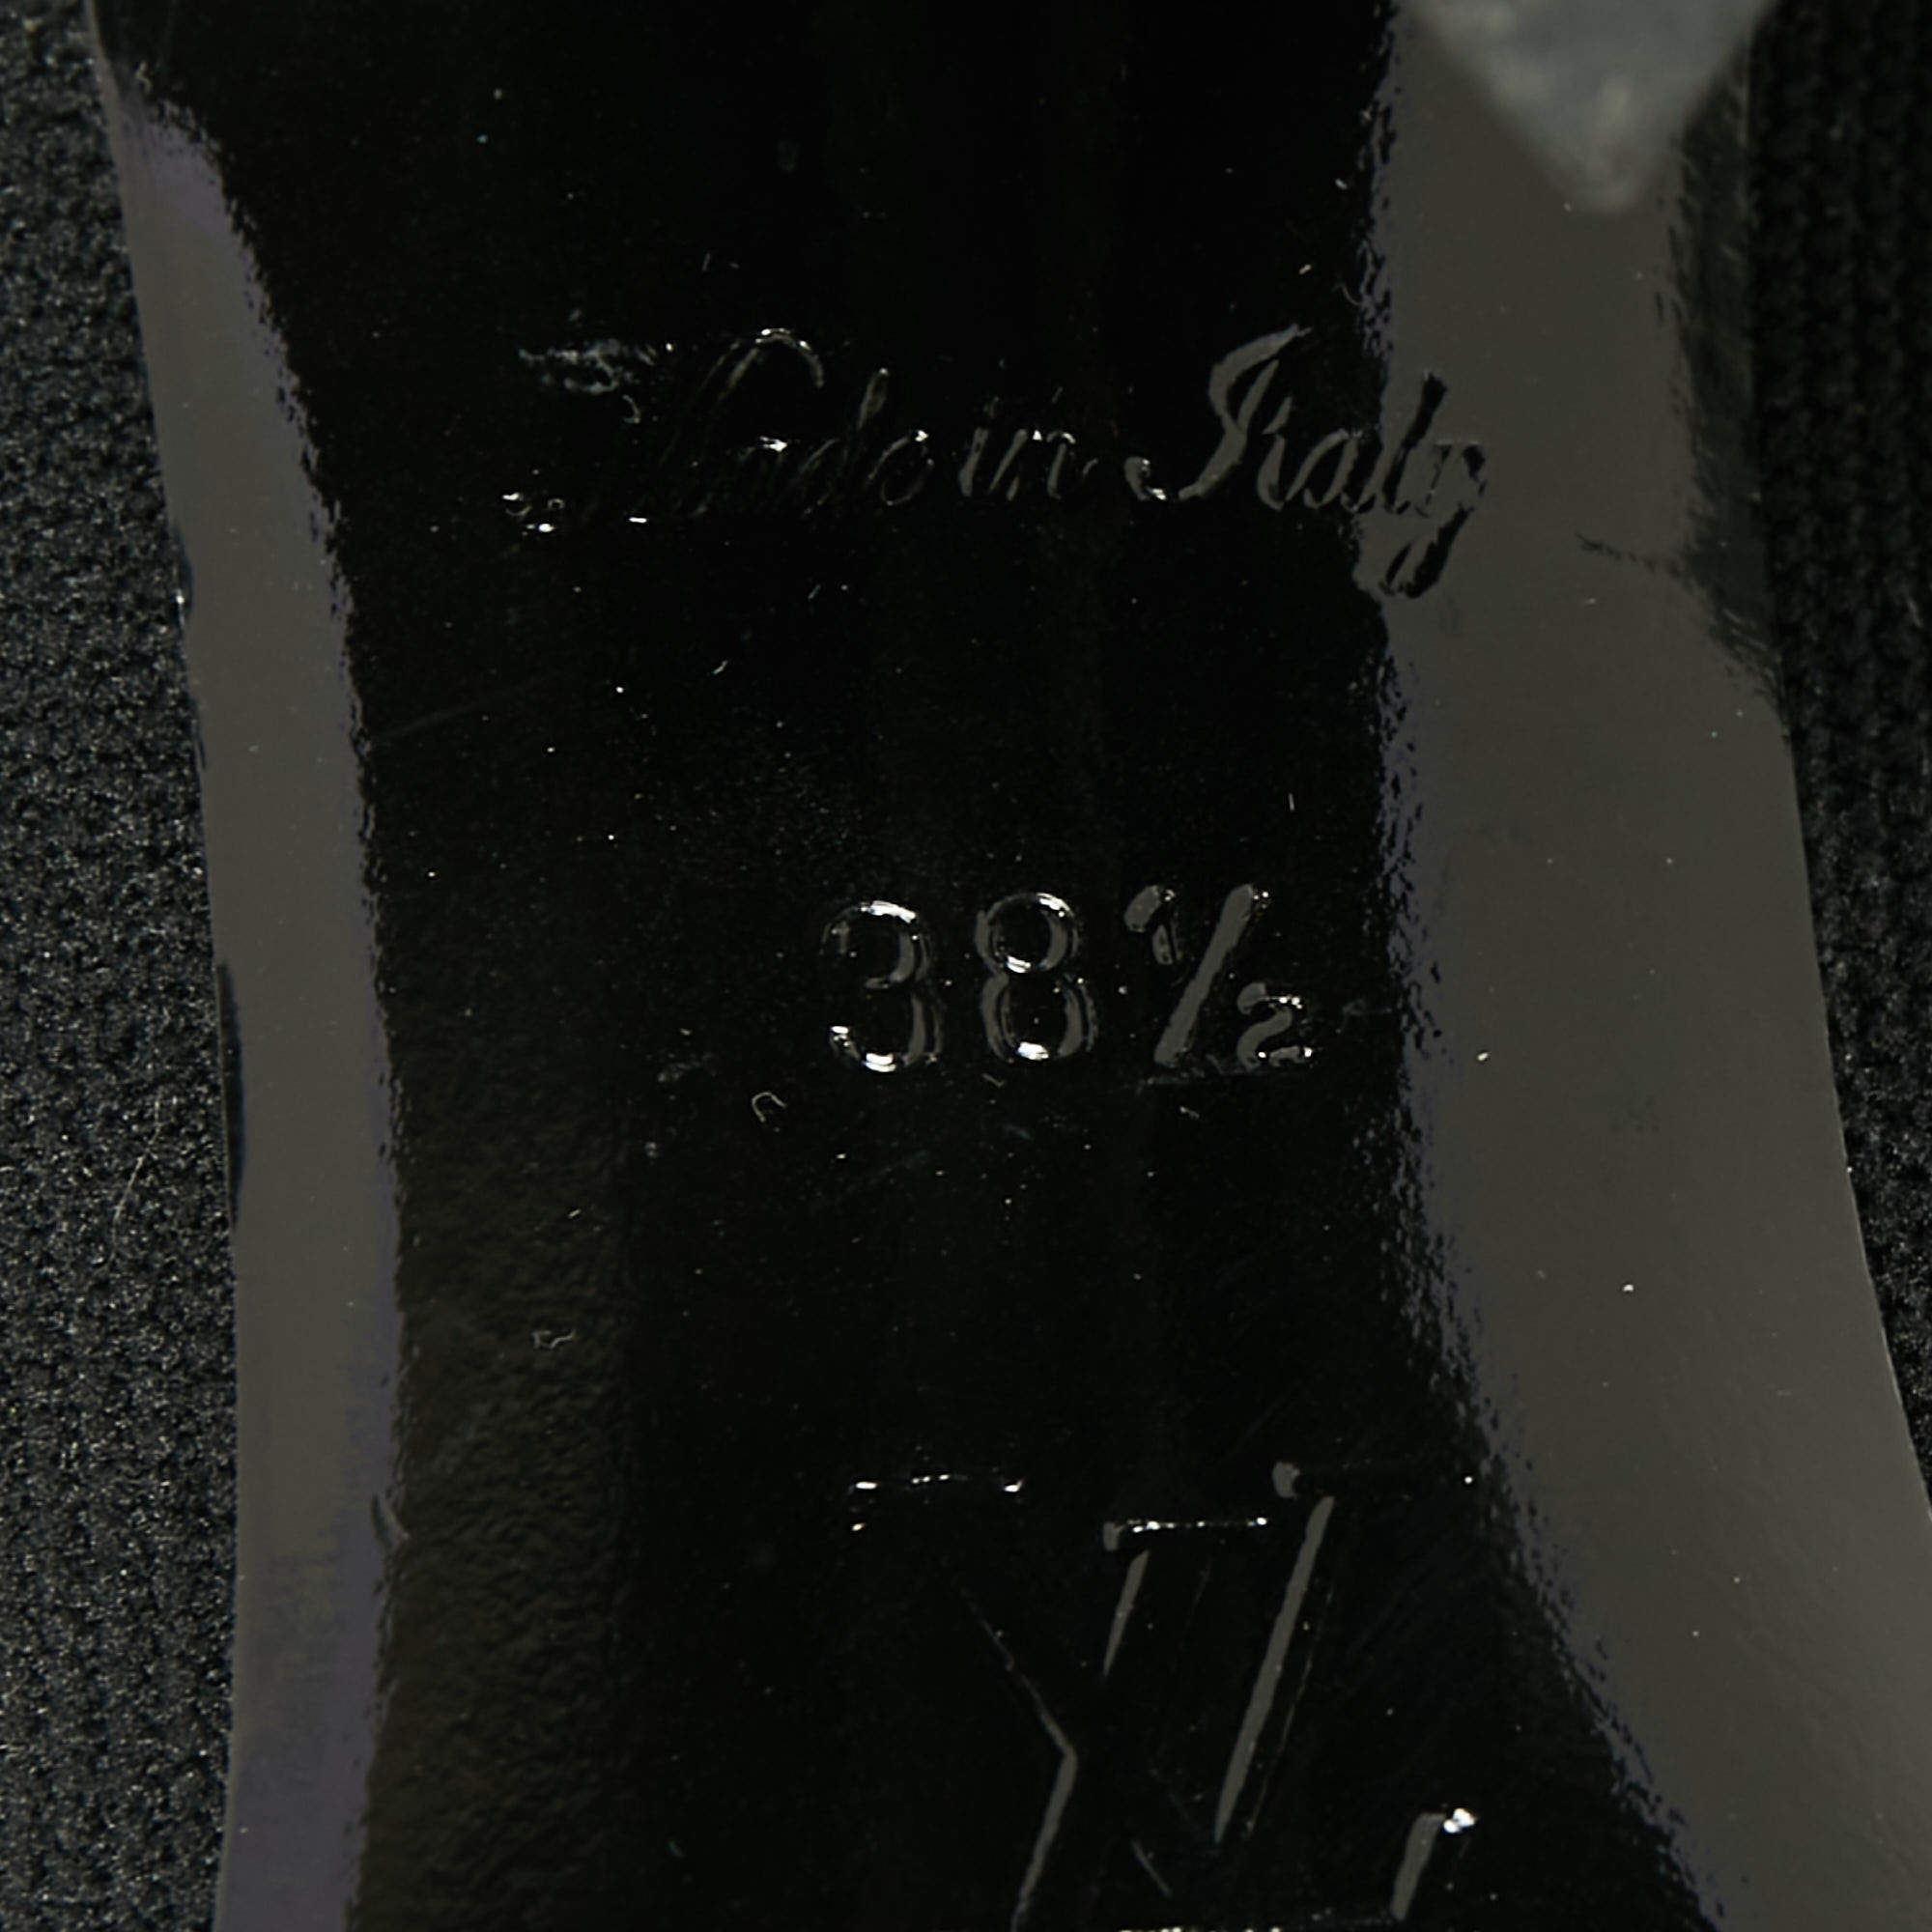 Louis Vuitton Black Stretch Fabric LV Black Heart Sock Ankle Boots Size  36.5 Louis Vuitton